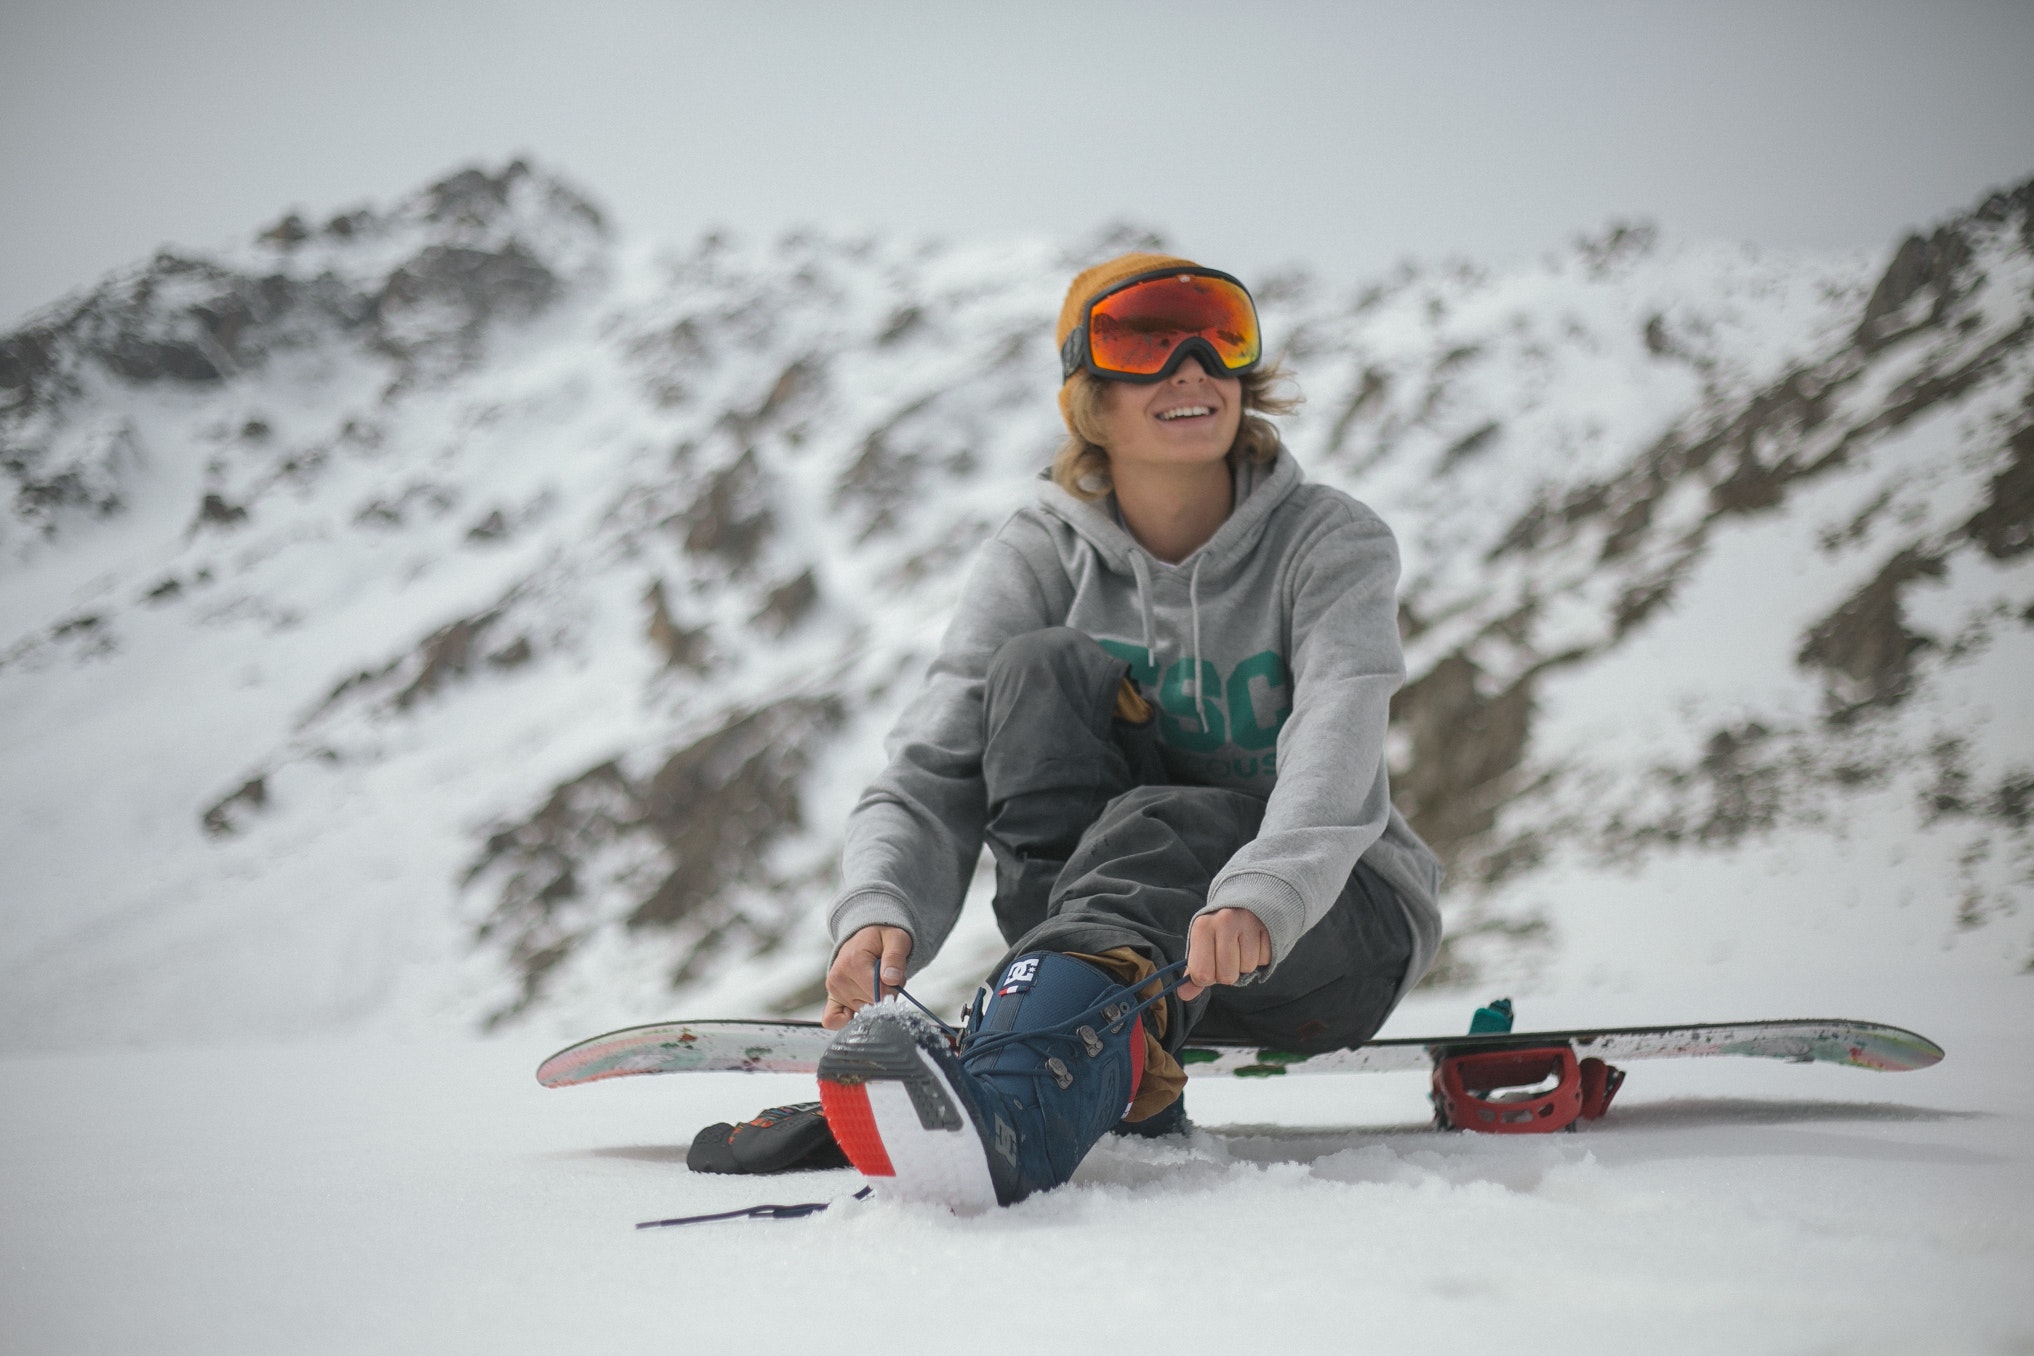 Go snowboarding. Катание на горных лыжах. Сноуборд. Девушка на лыжах. Сноубордисты на склоне.